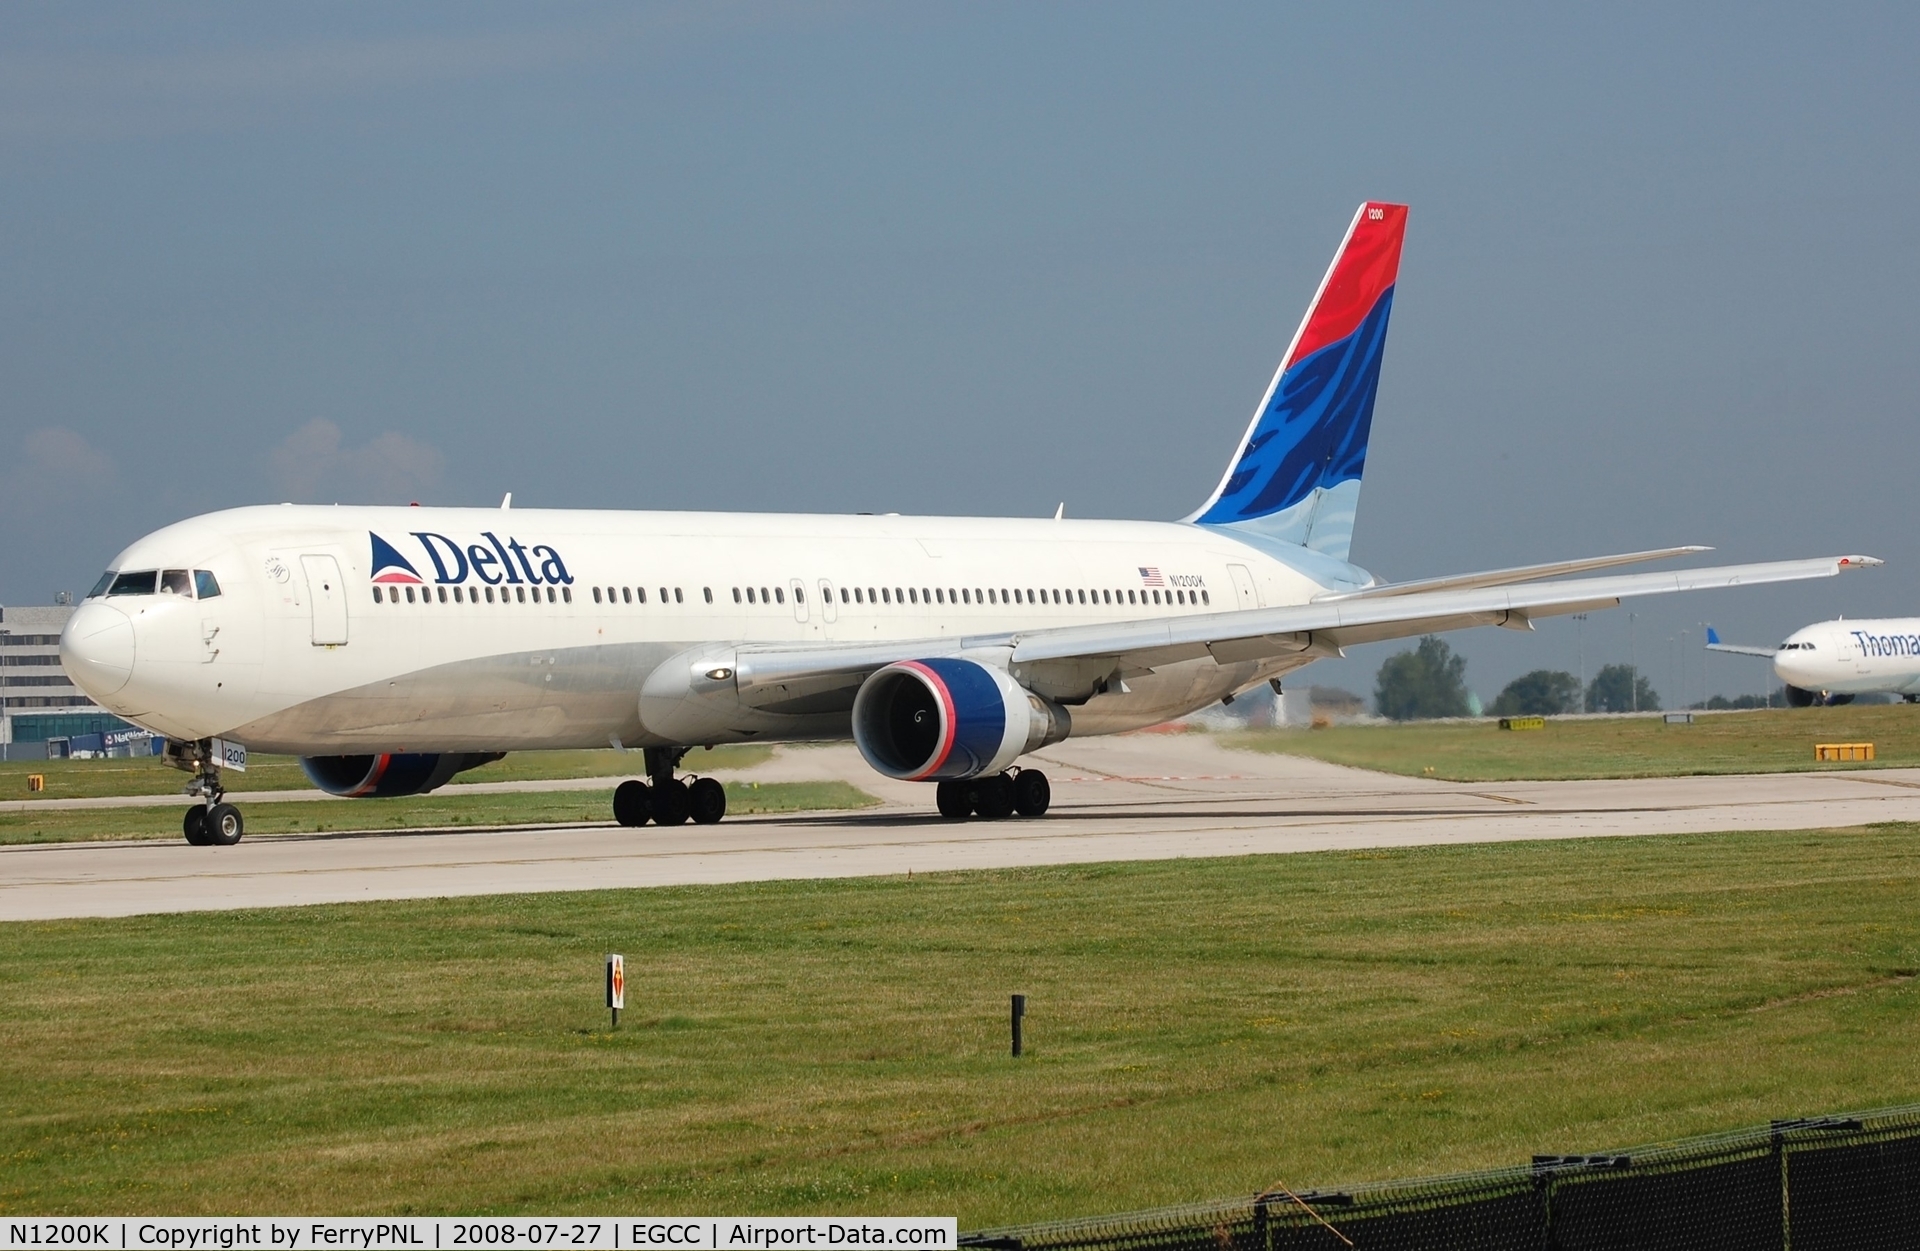 N1200K, 1998 Boeing 767-332 C/N 28457, Departure of Delta B763 before winglets were added.